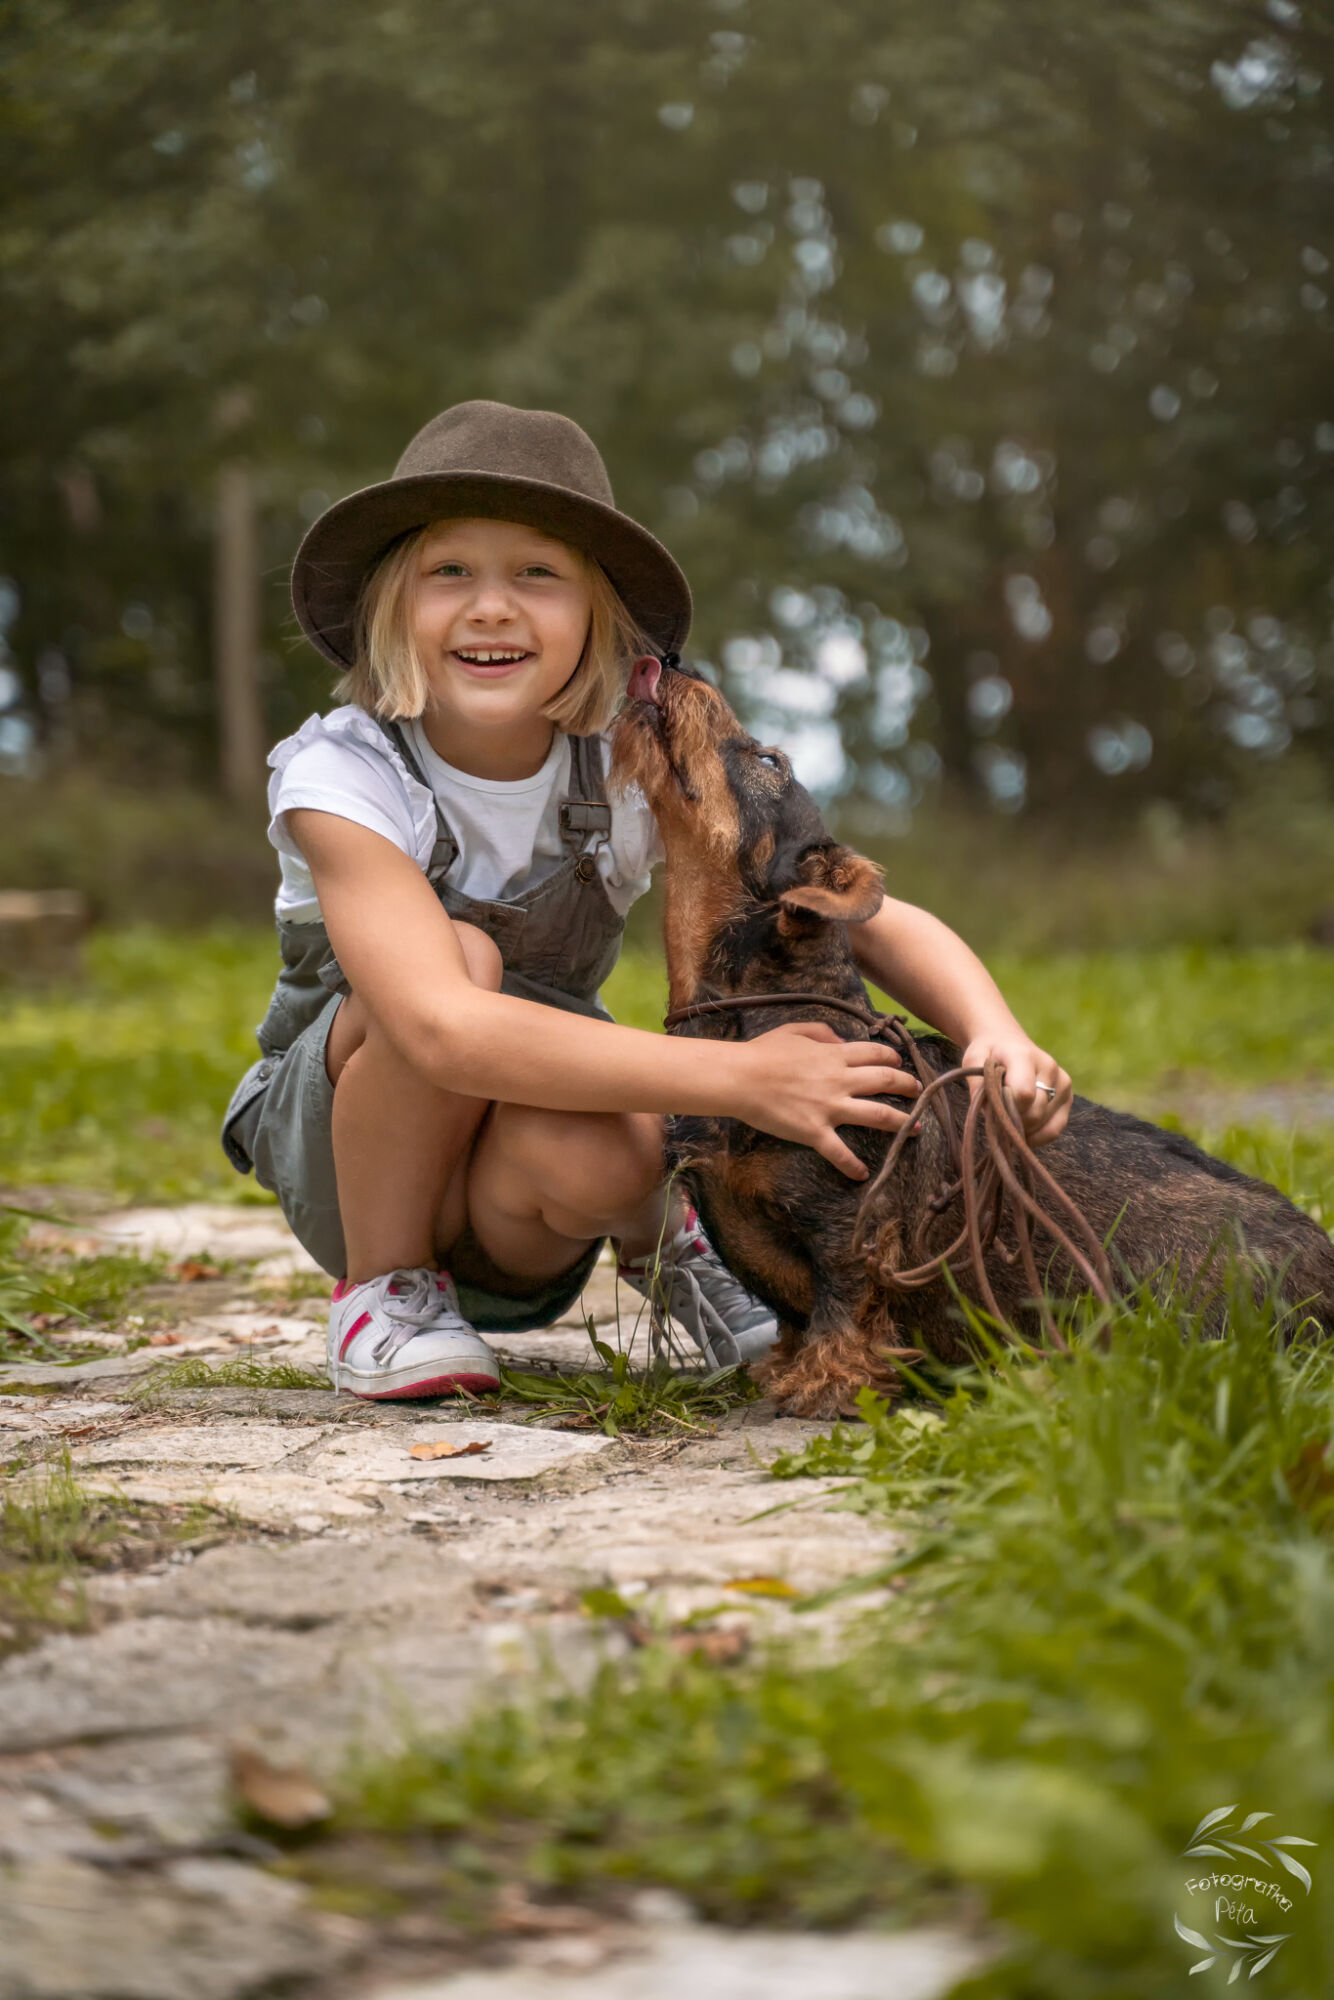 focení s mysliveckou tématikou lovecký pes a dítě přátelství fotografka péťa